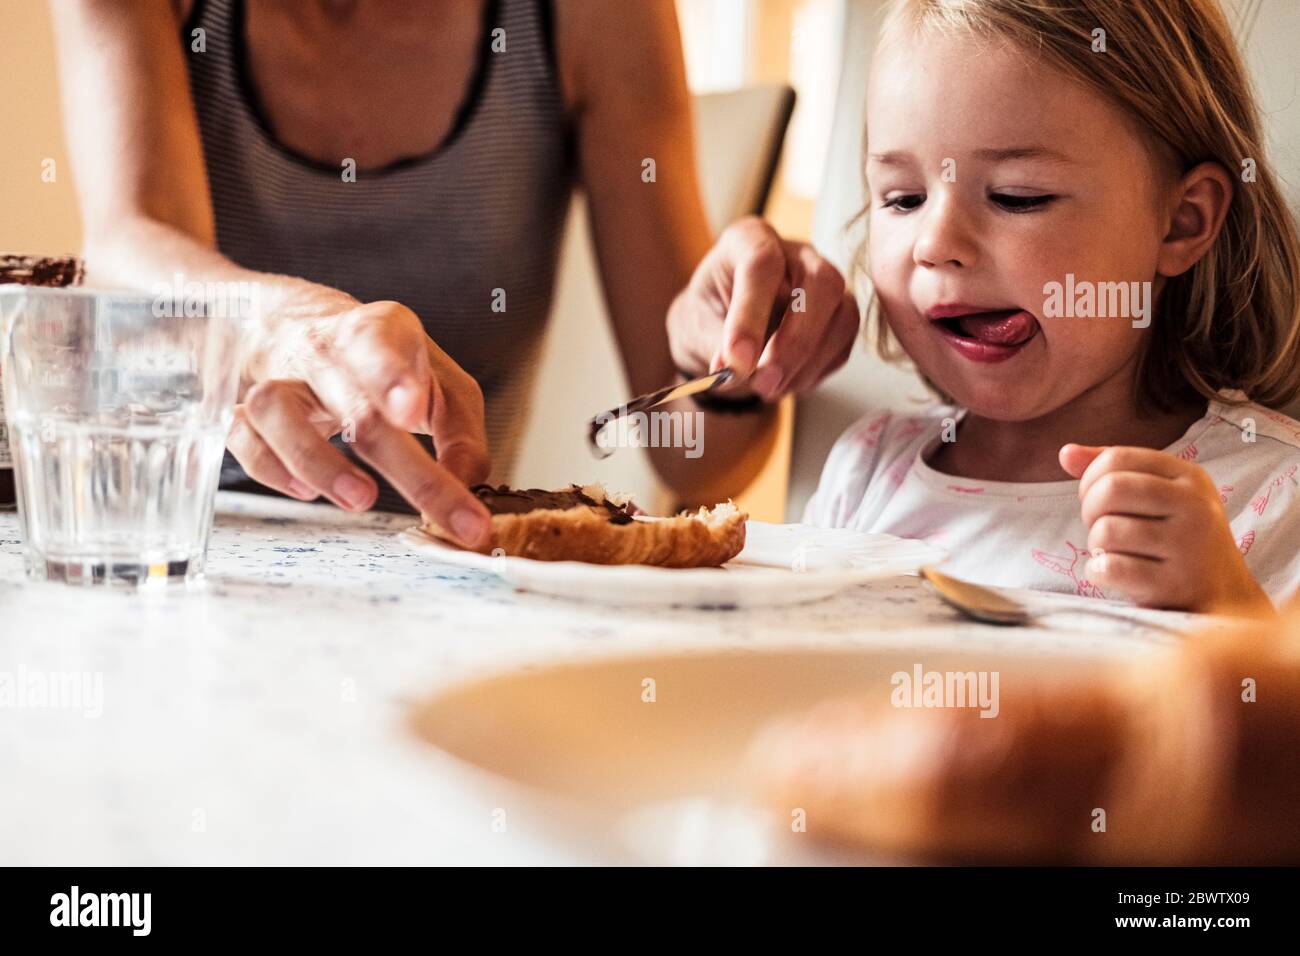 Ritratto di bambina che guarda la madre che diffonde crema di cioccolato sul croissant Foto Stock